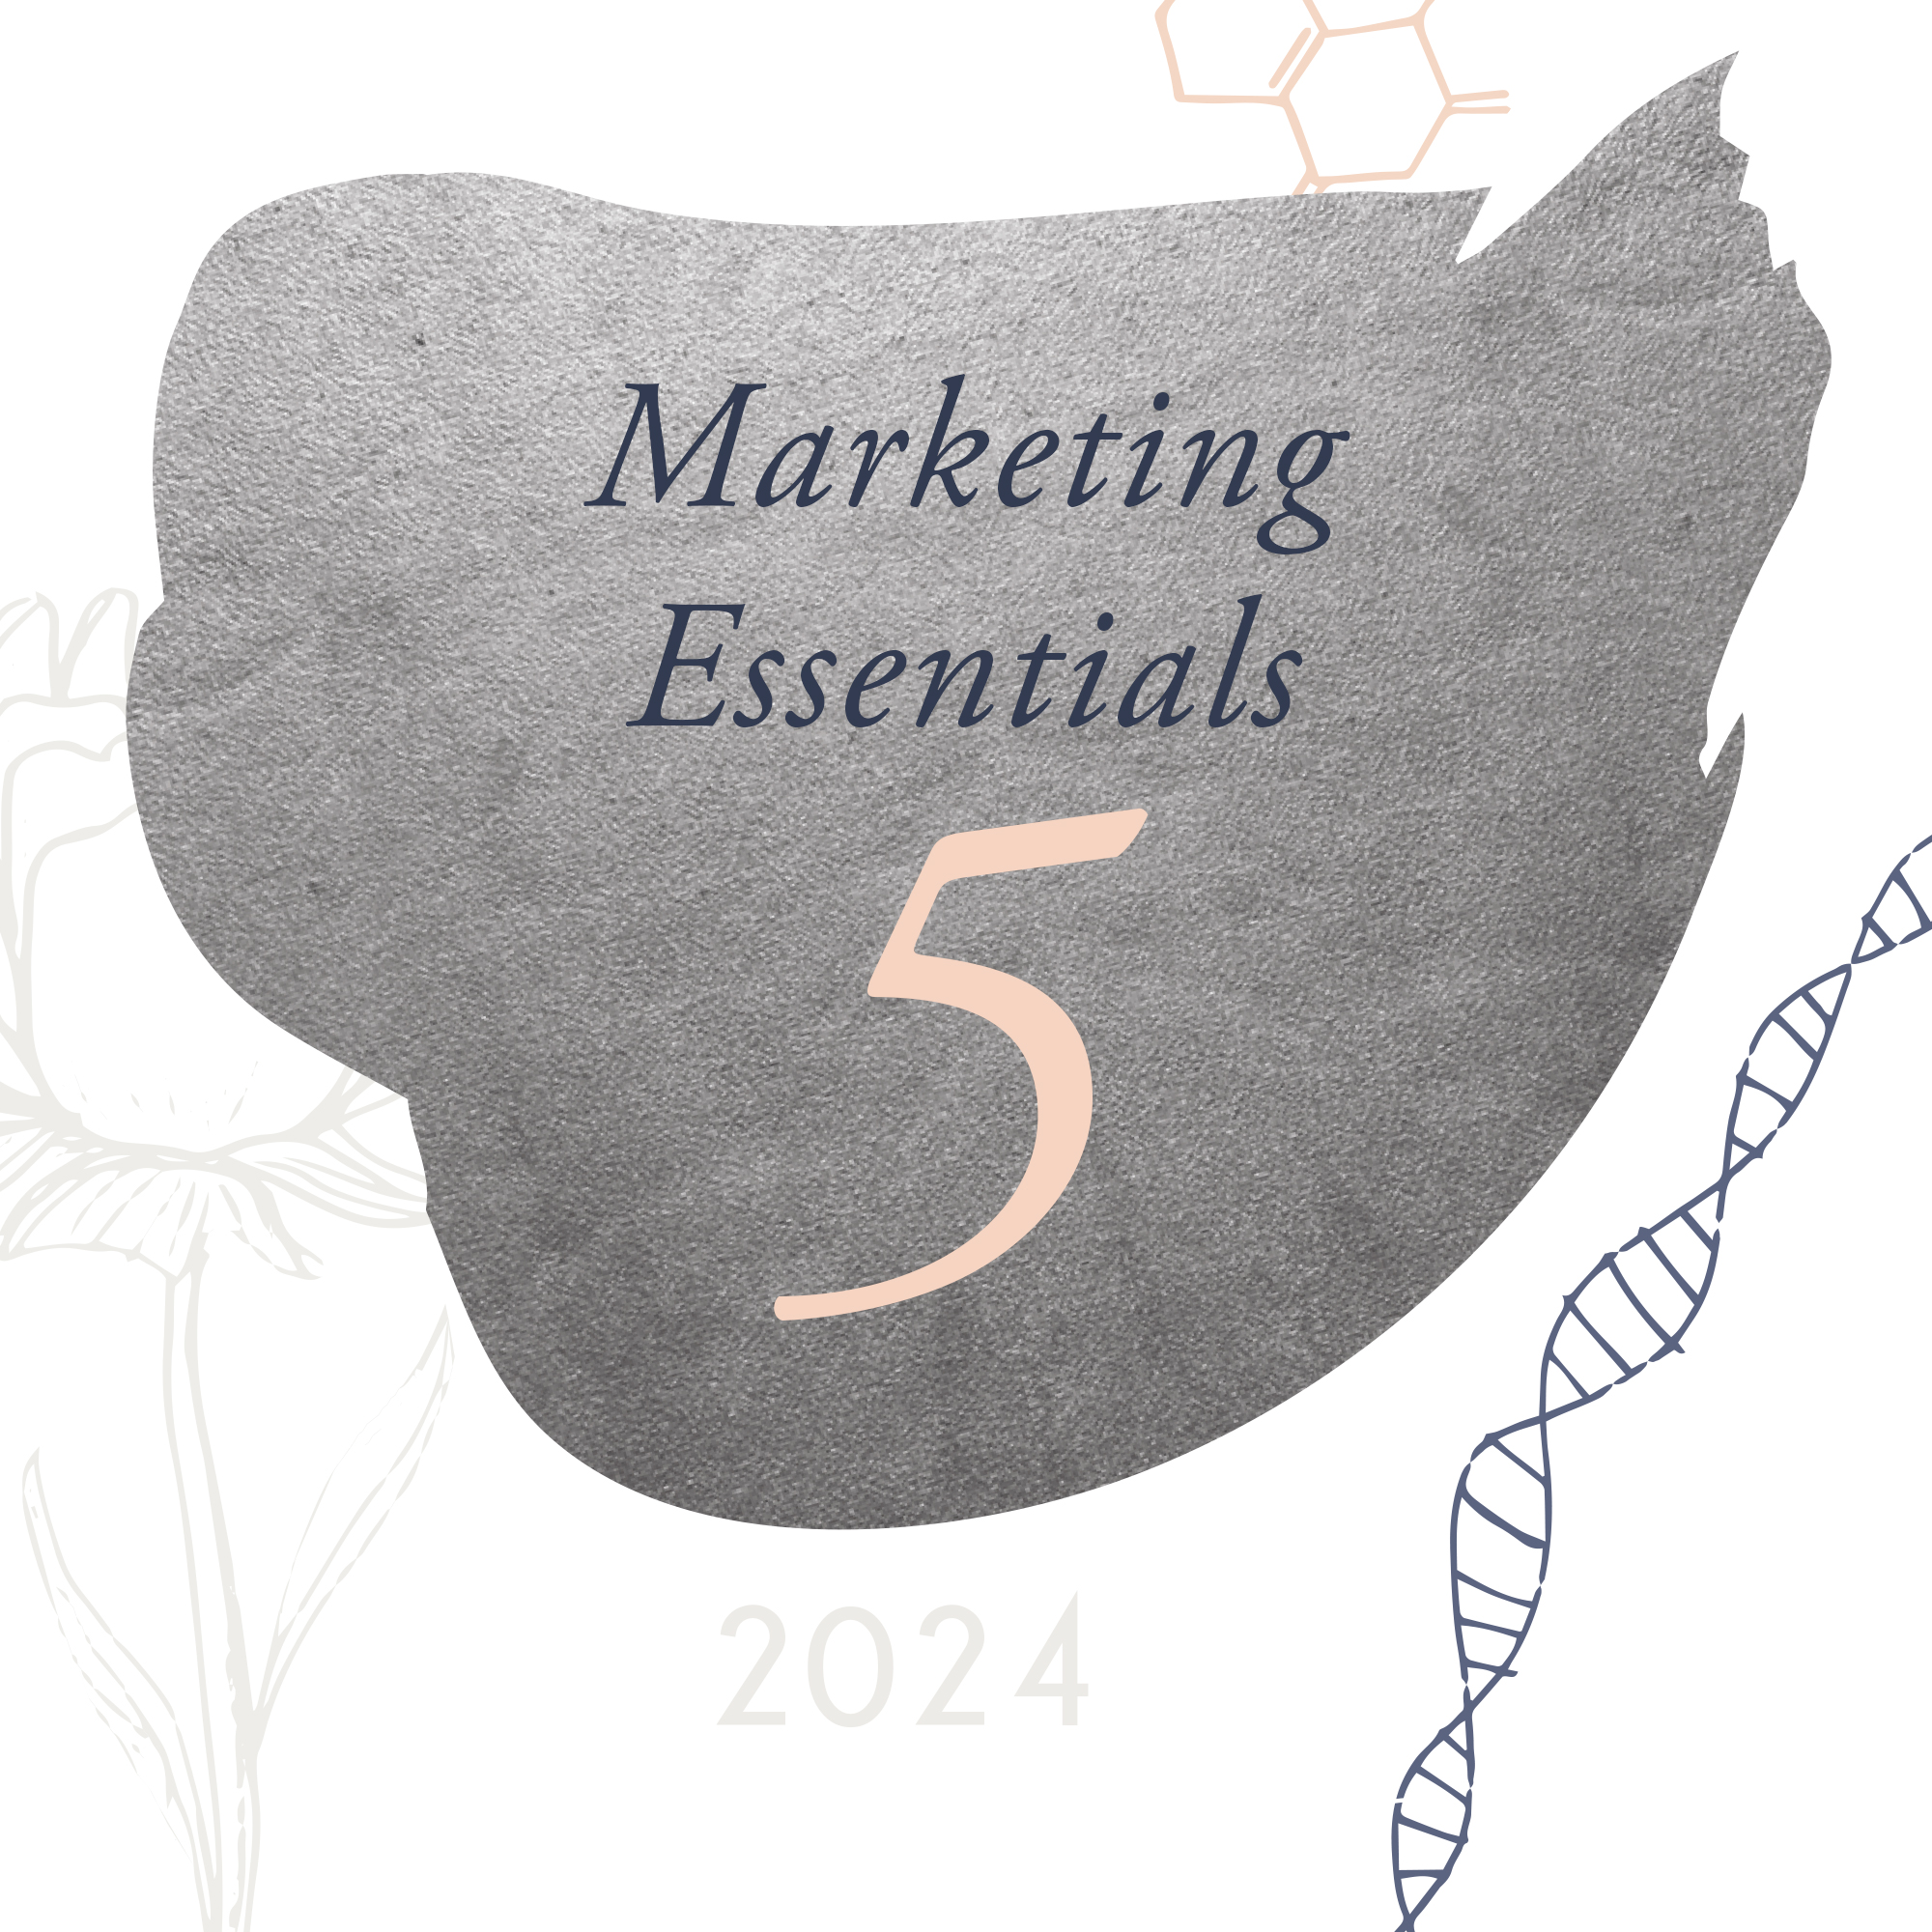 Marketing Essentials 5